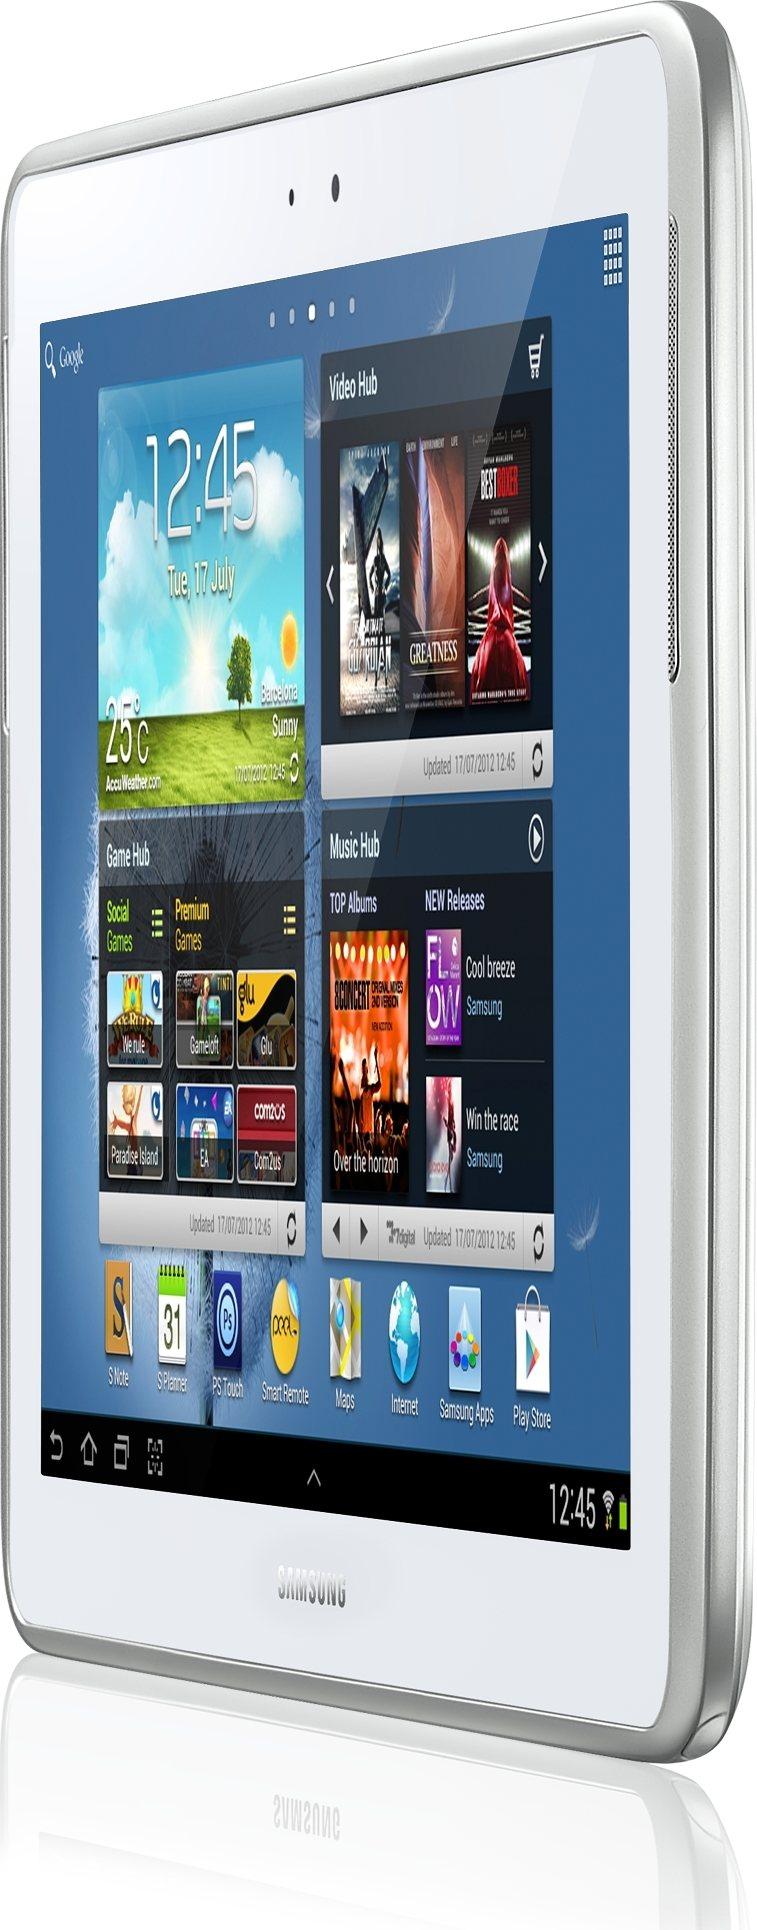 Galaxy Note 10.1 (3G + WiFi) GT-N8000